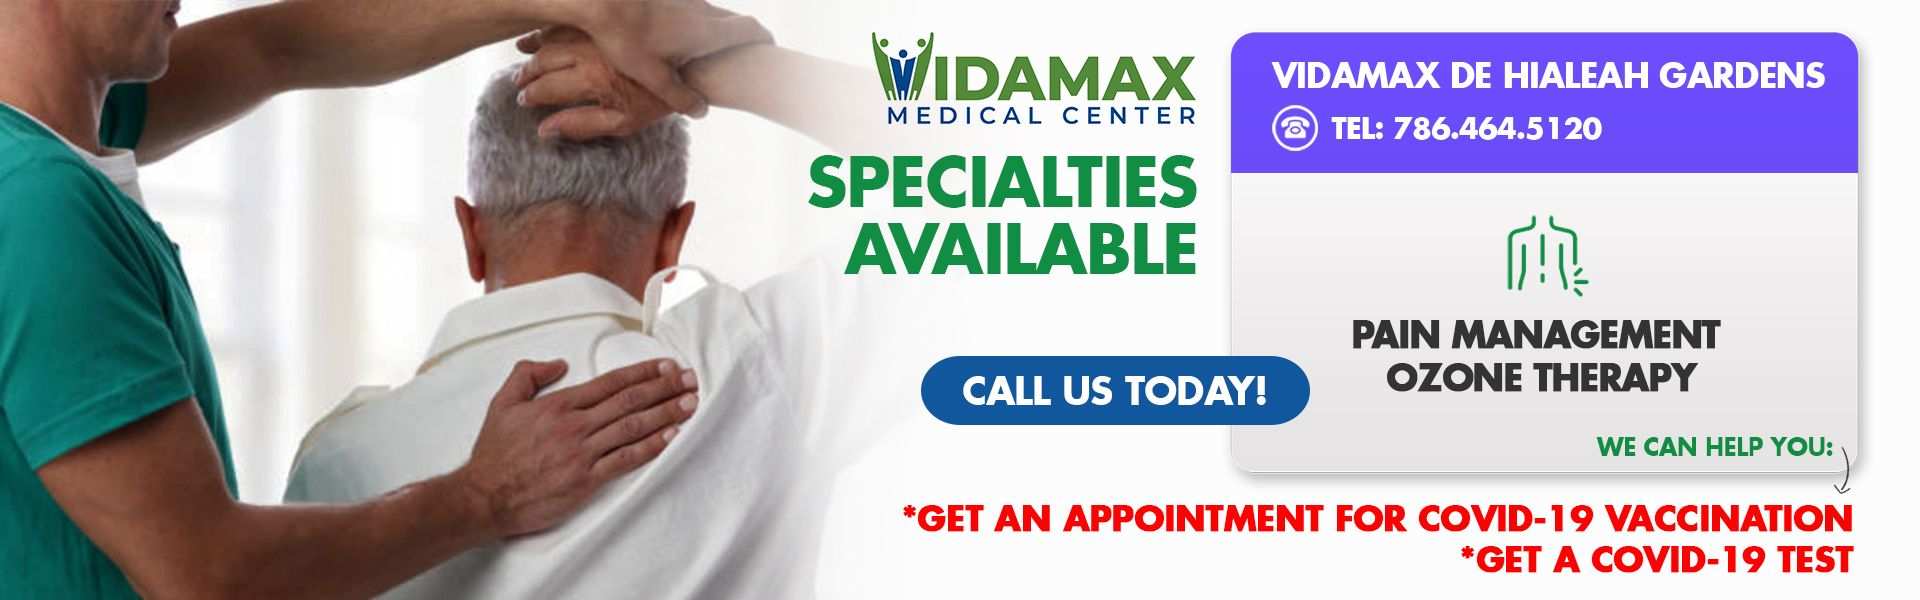 medical services vidamax